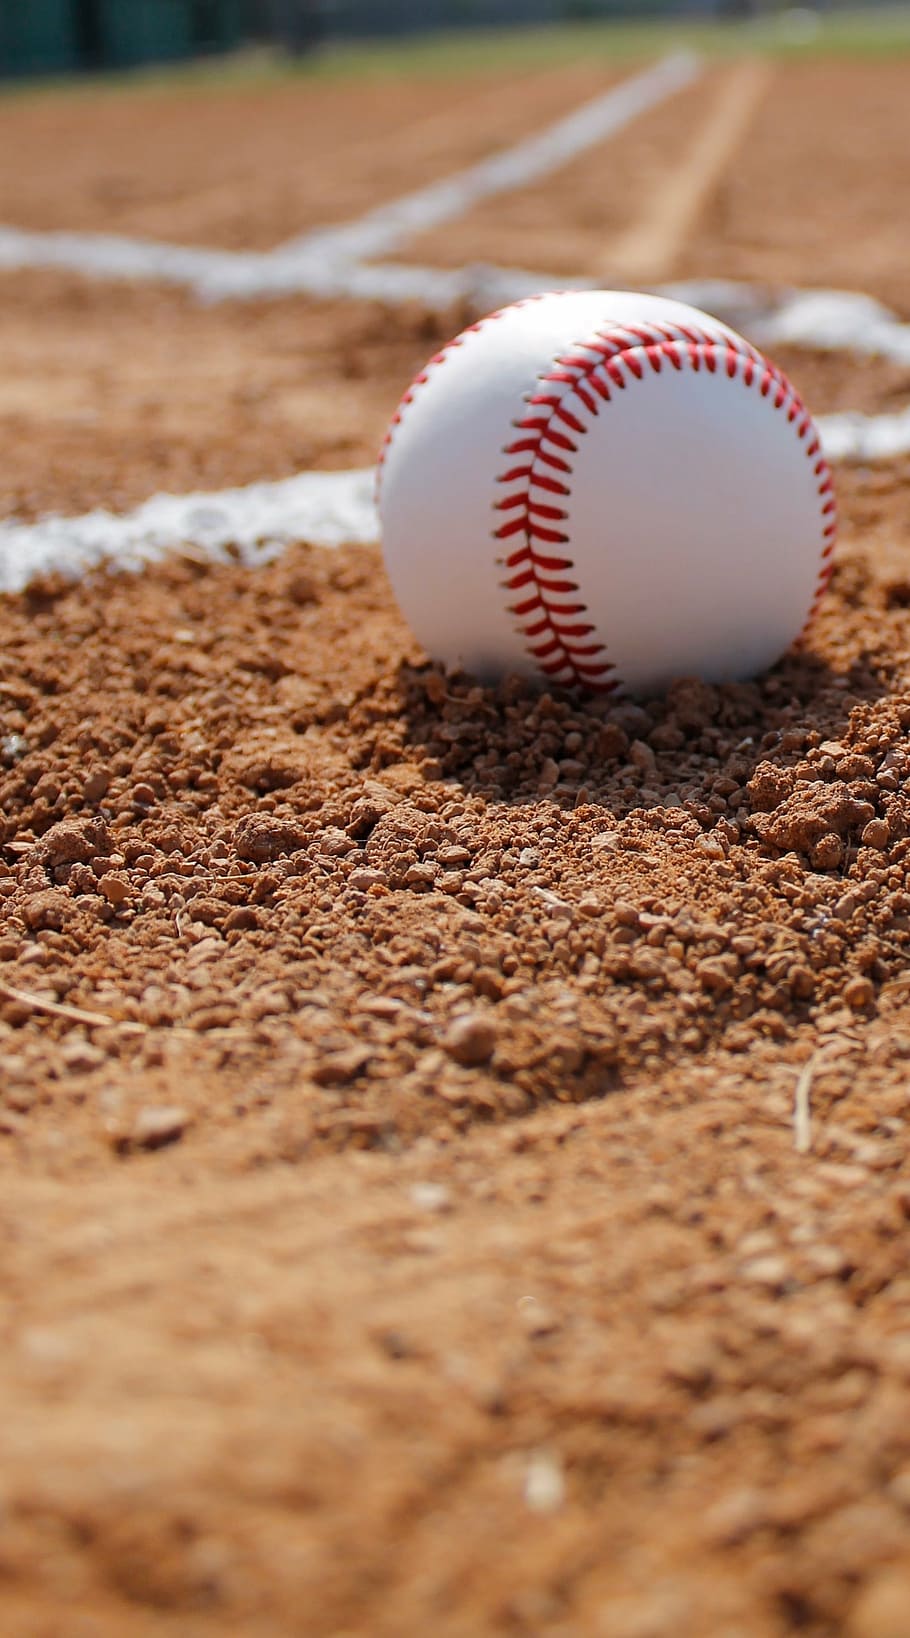 white baseball on field, gravel, baseball - Ball, sport, baseball - Sport